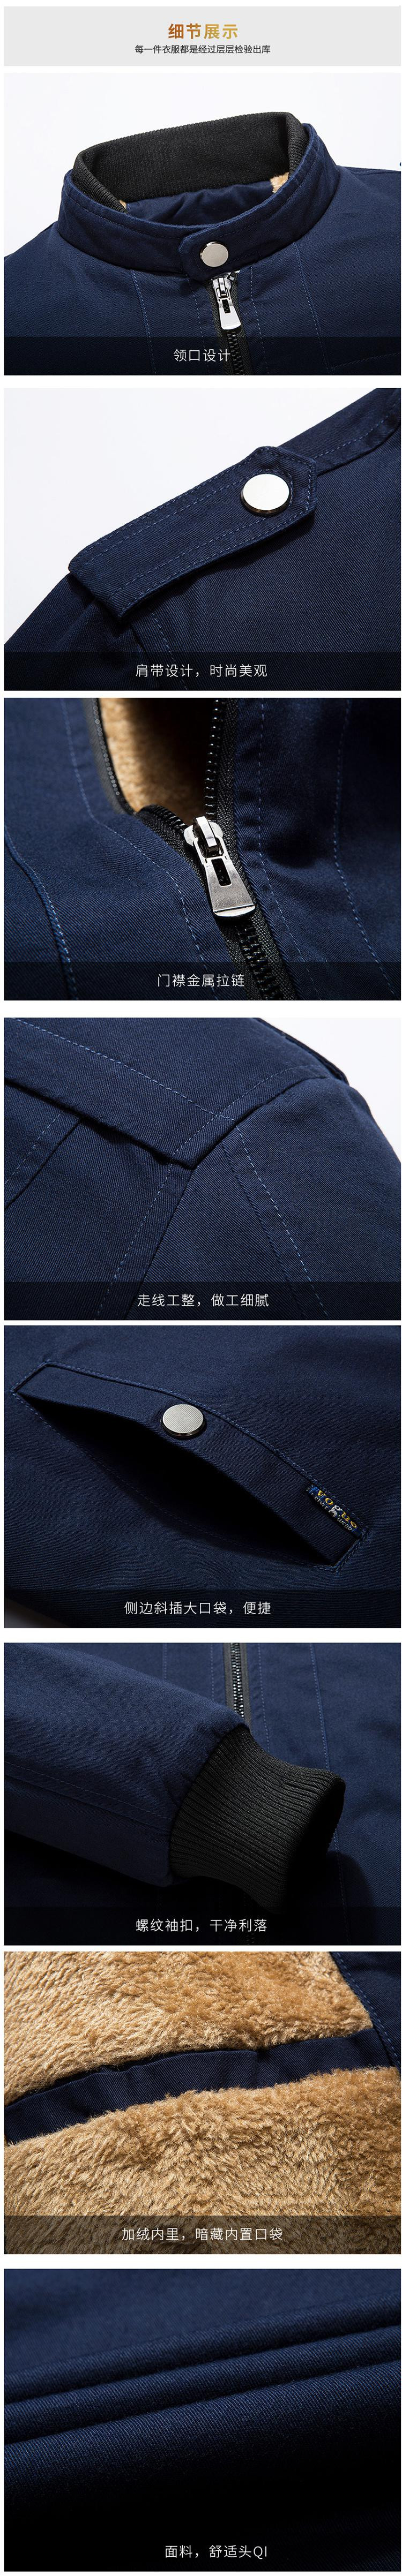 花花公子 新款青年男士短款夹克韩版潮流男装加厚加绒外套HNBC-1610